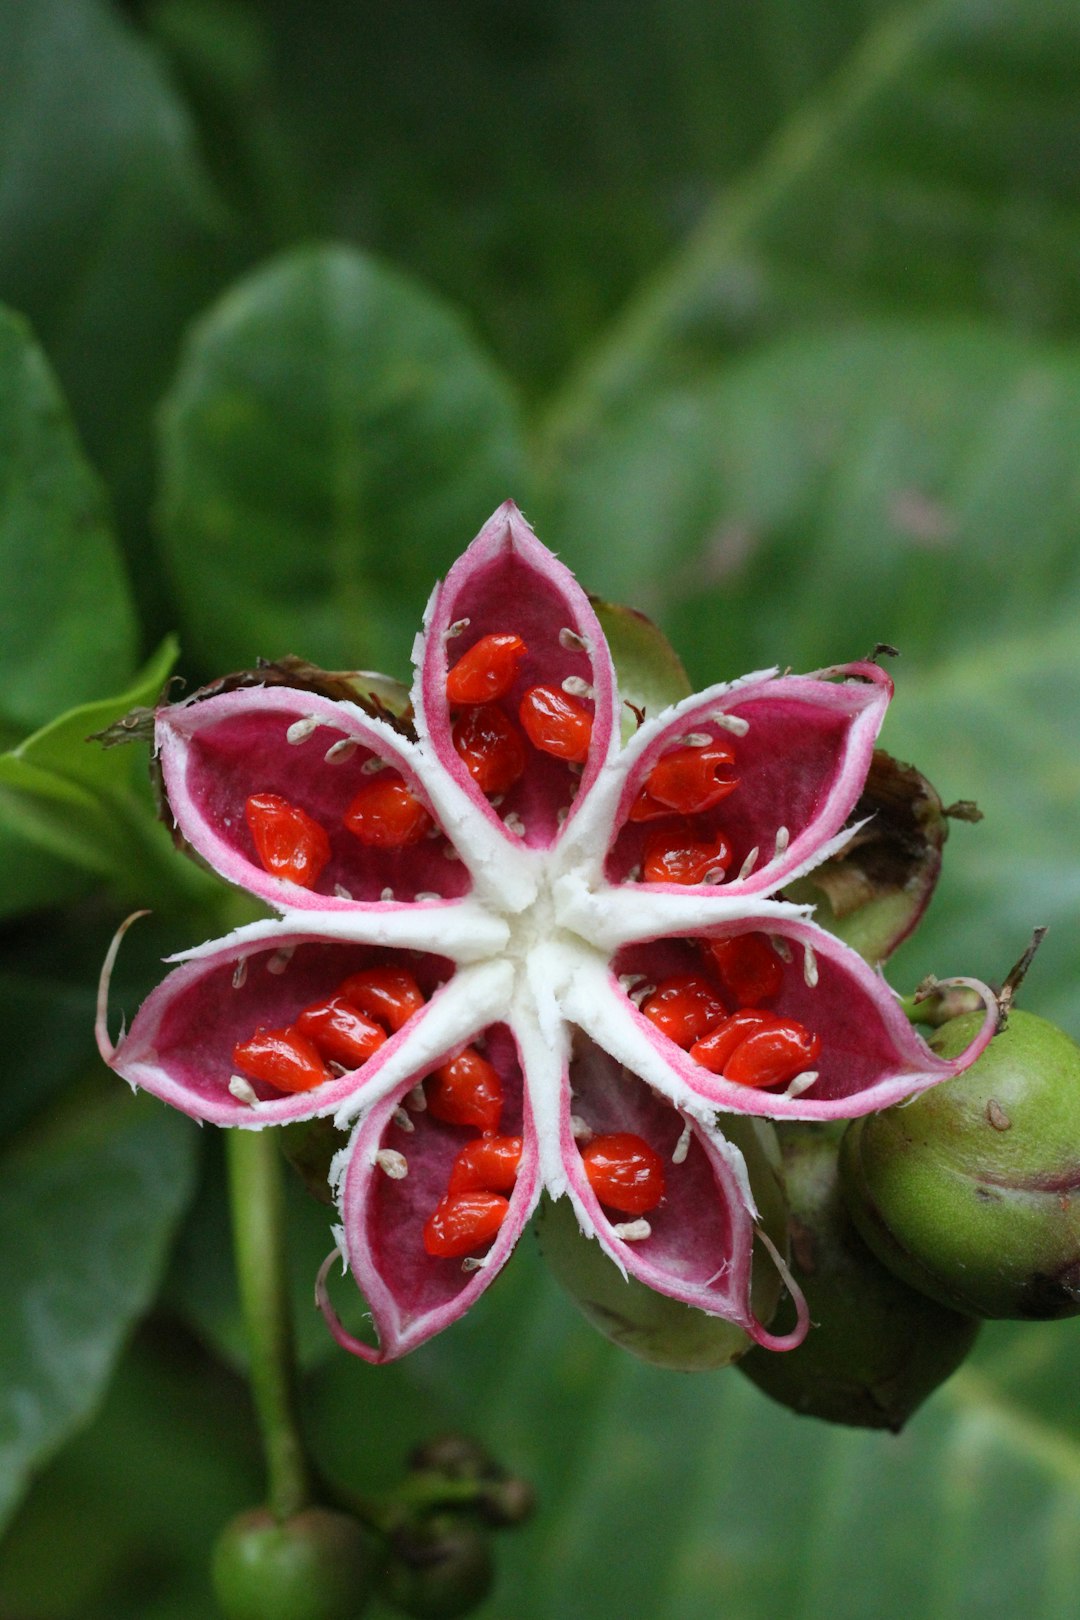 red and white flower buds in tilt shift lens